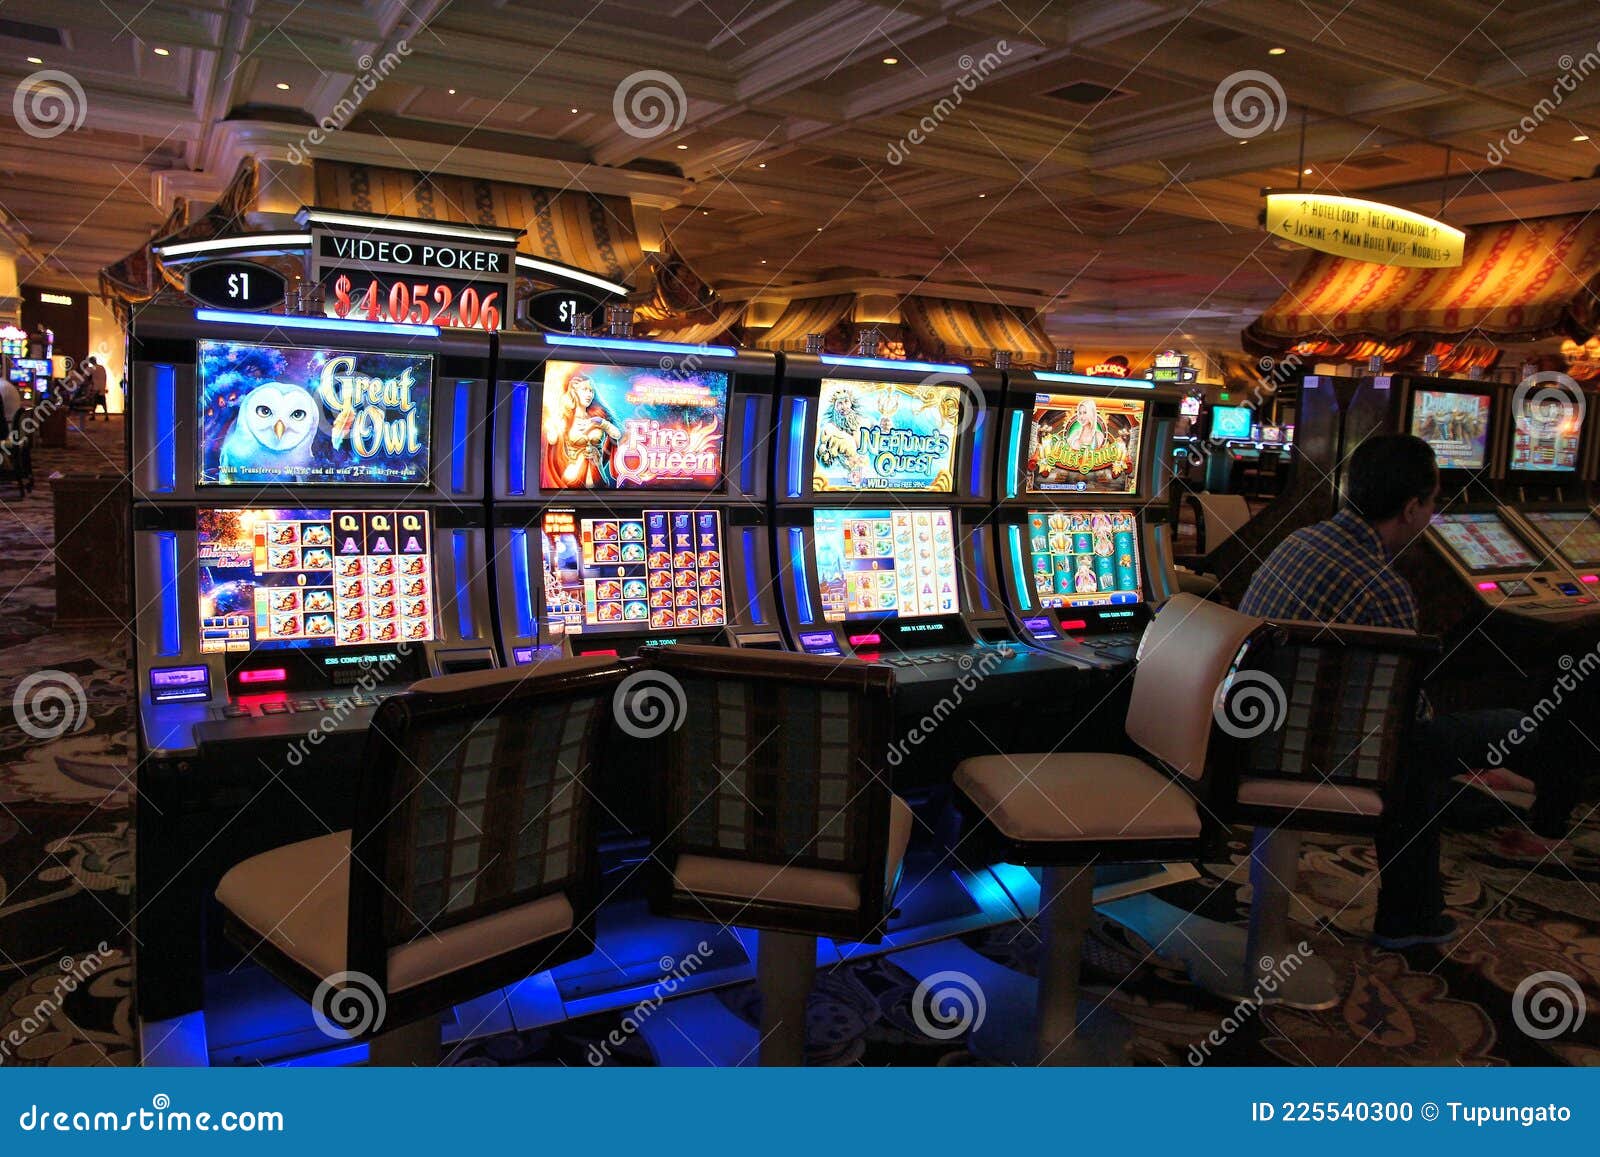 Вегас казино игровые автоматы ребенок застрял в игровом автомате